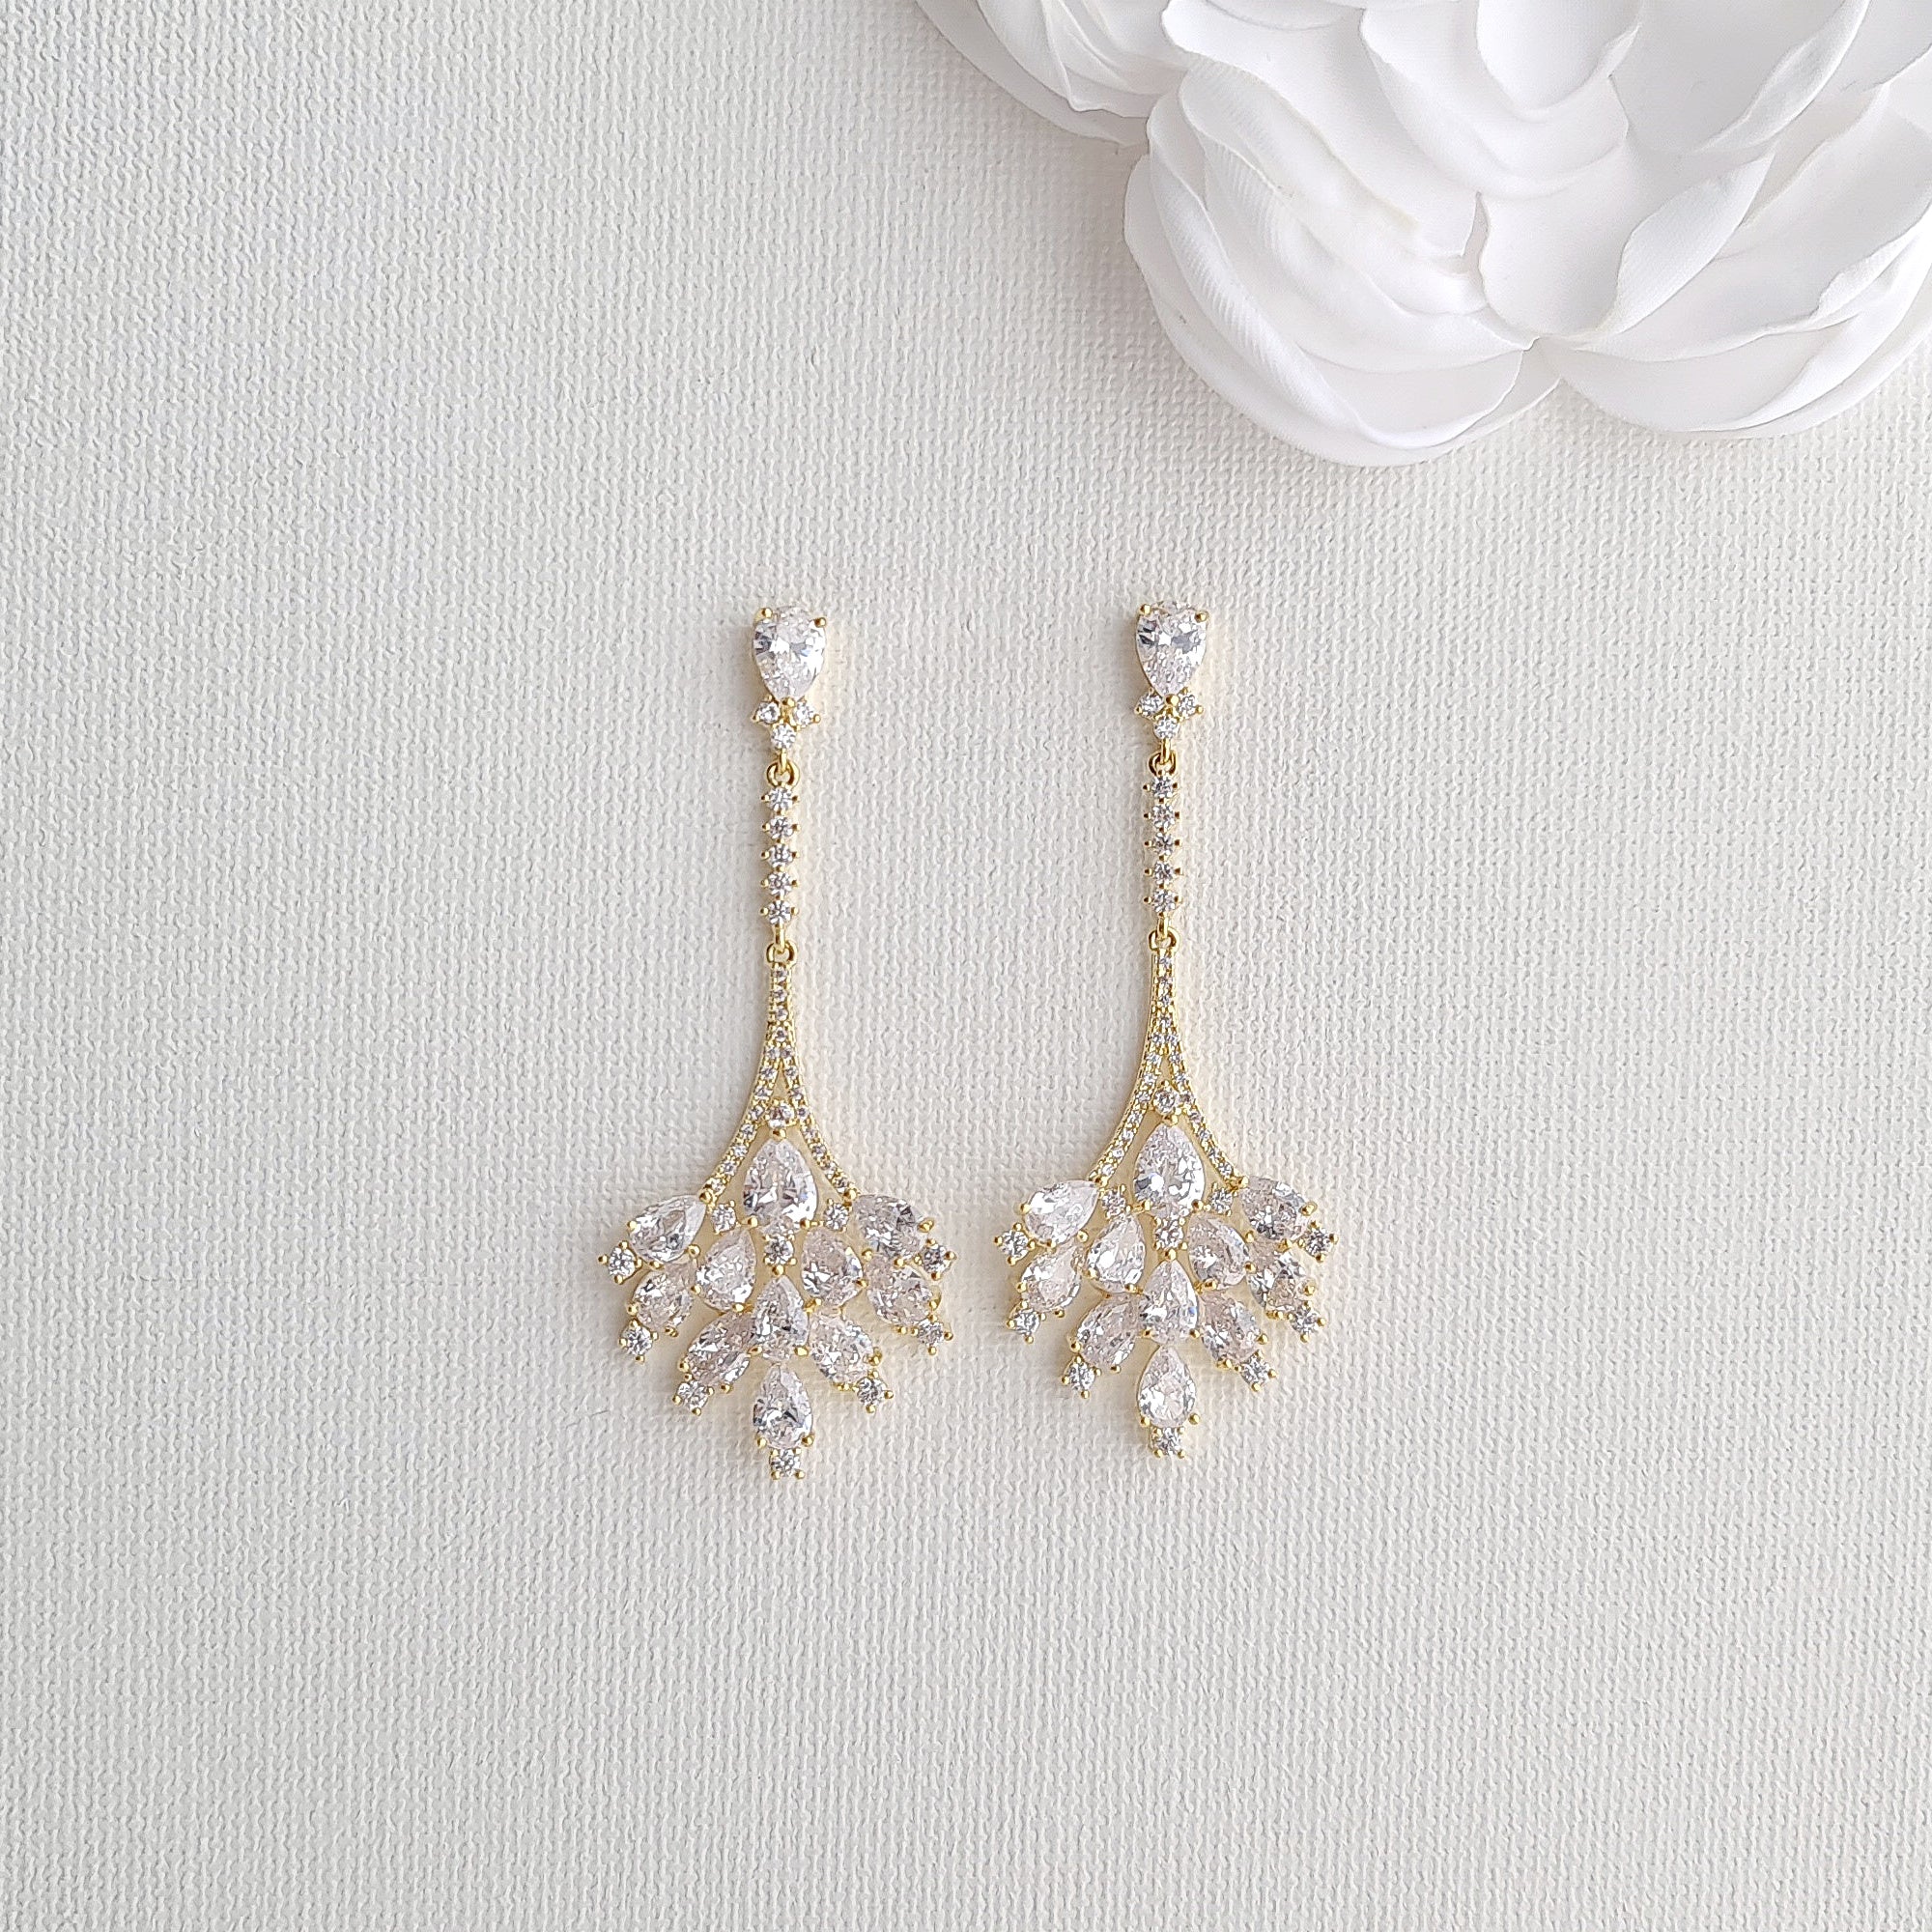 Pearl Drop Earrings, Art Deco Bridal Earrings | HelloArt